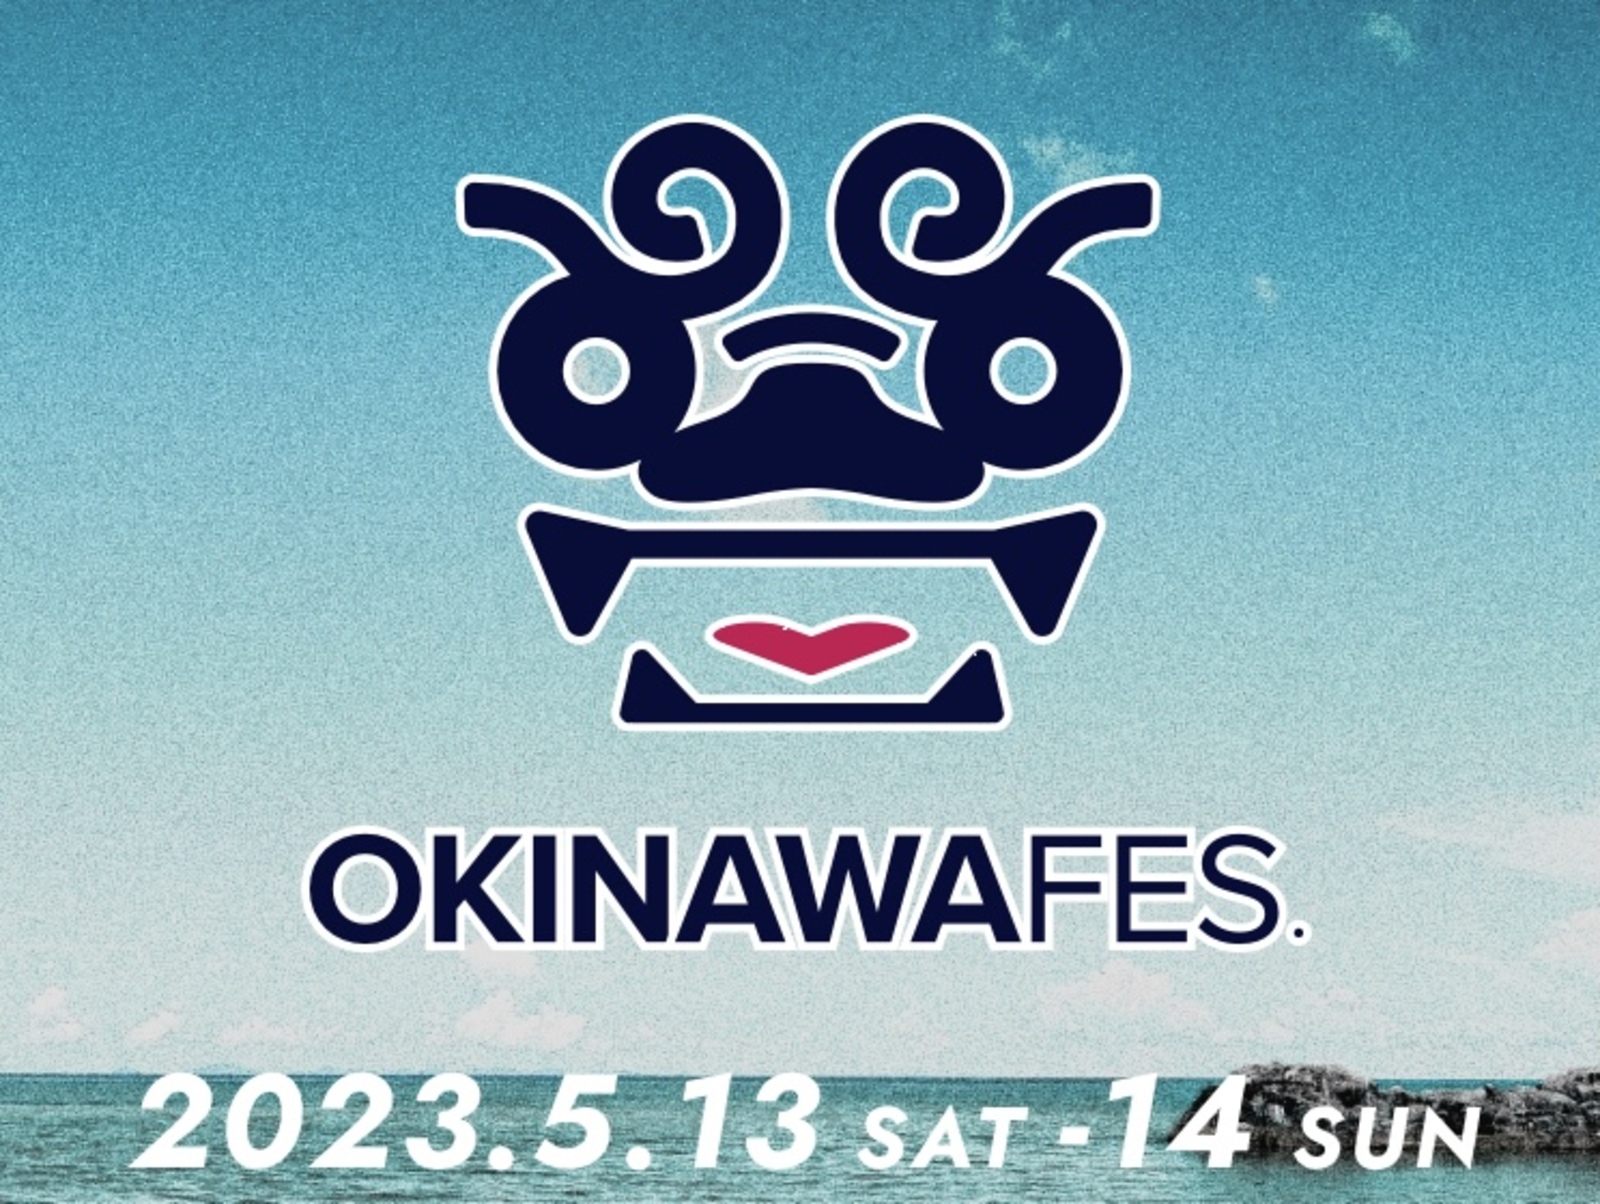 【満席 日曜日空きあり】沖縄フェスに行って南国気分を味わおう🌺🌴🐠